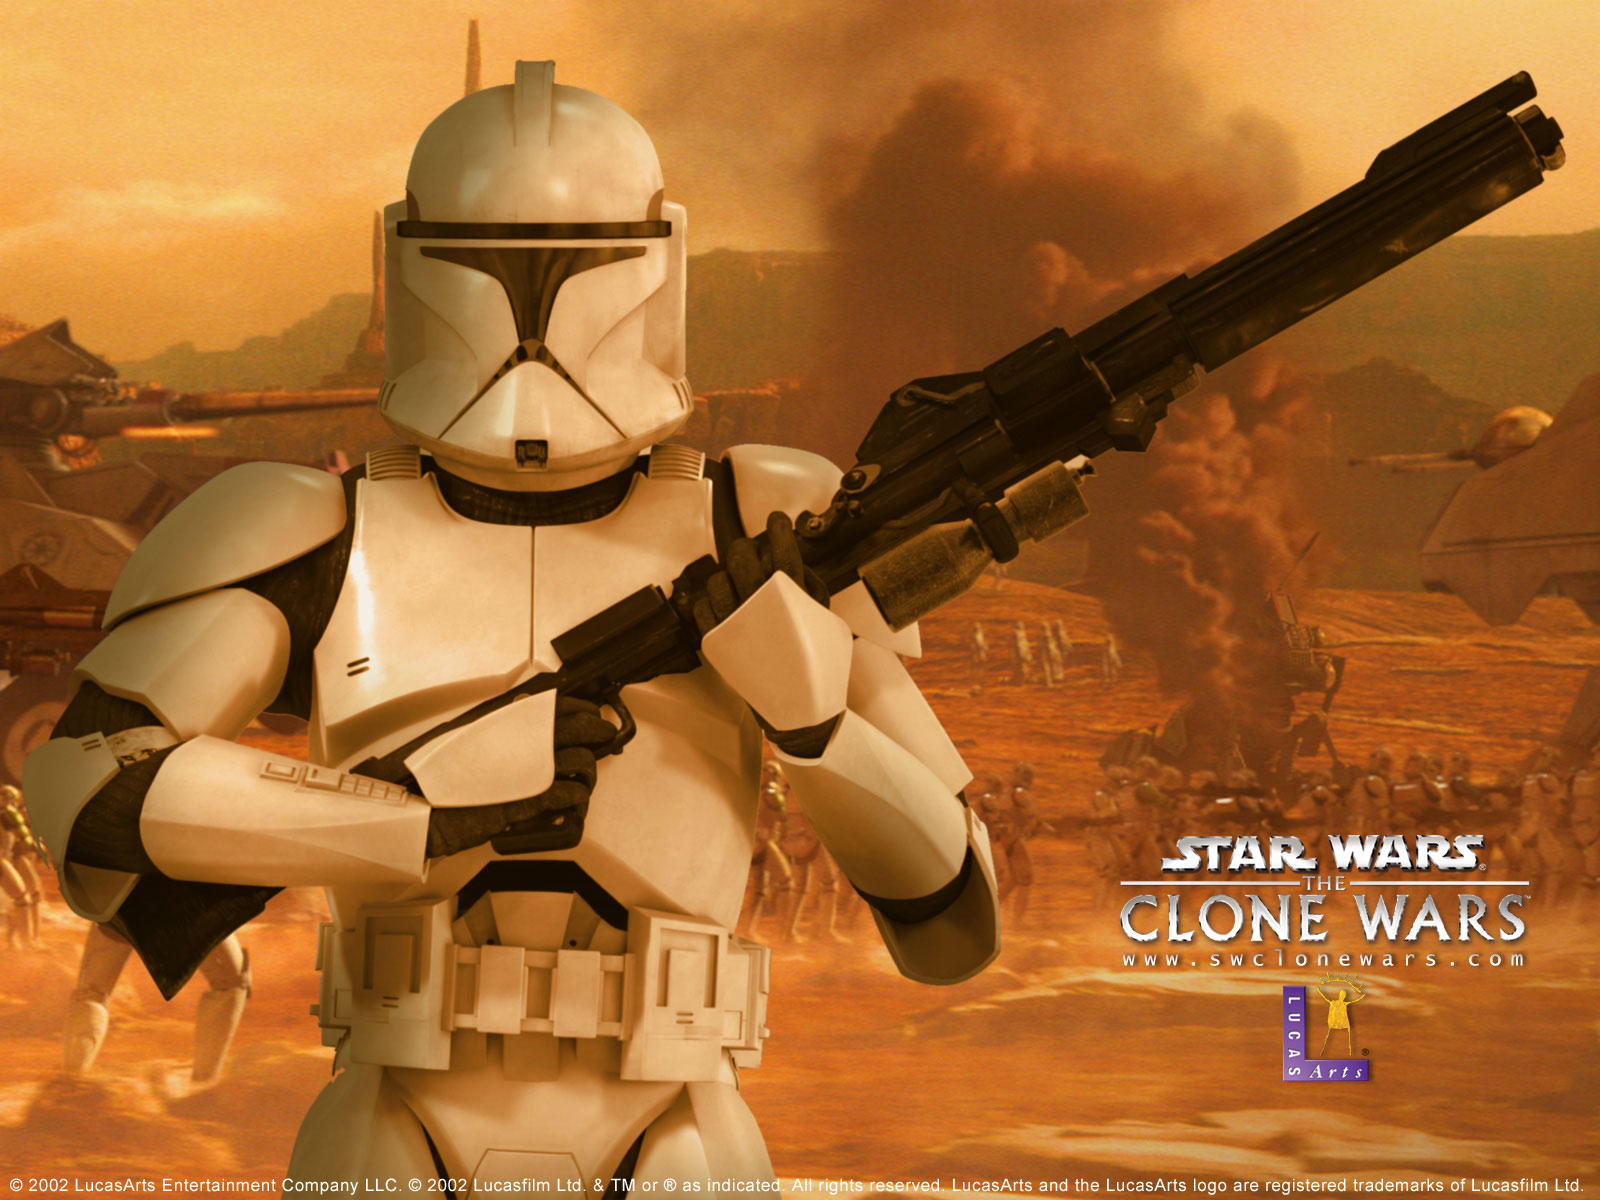 Star Wars: The Clone Wars Lock Screen Wallpaper